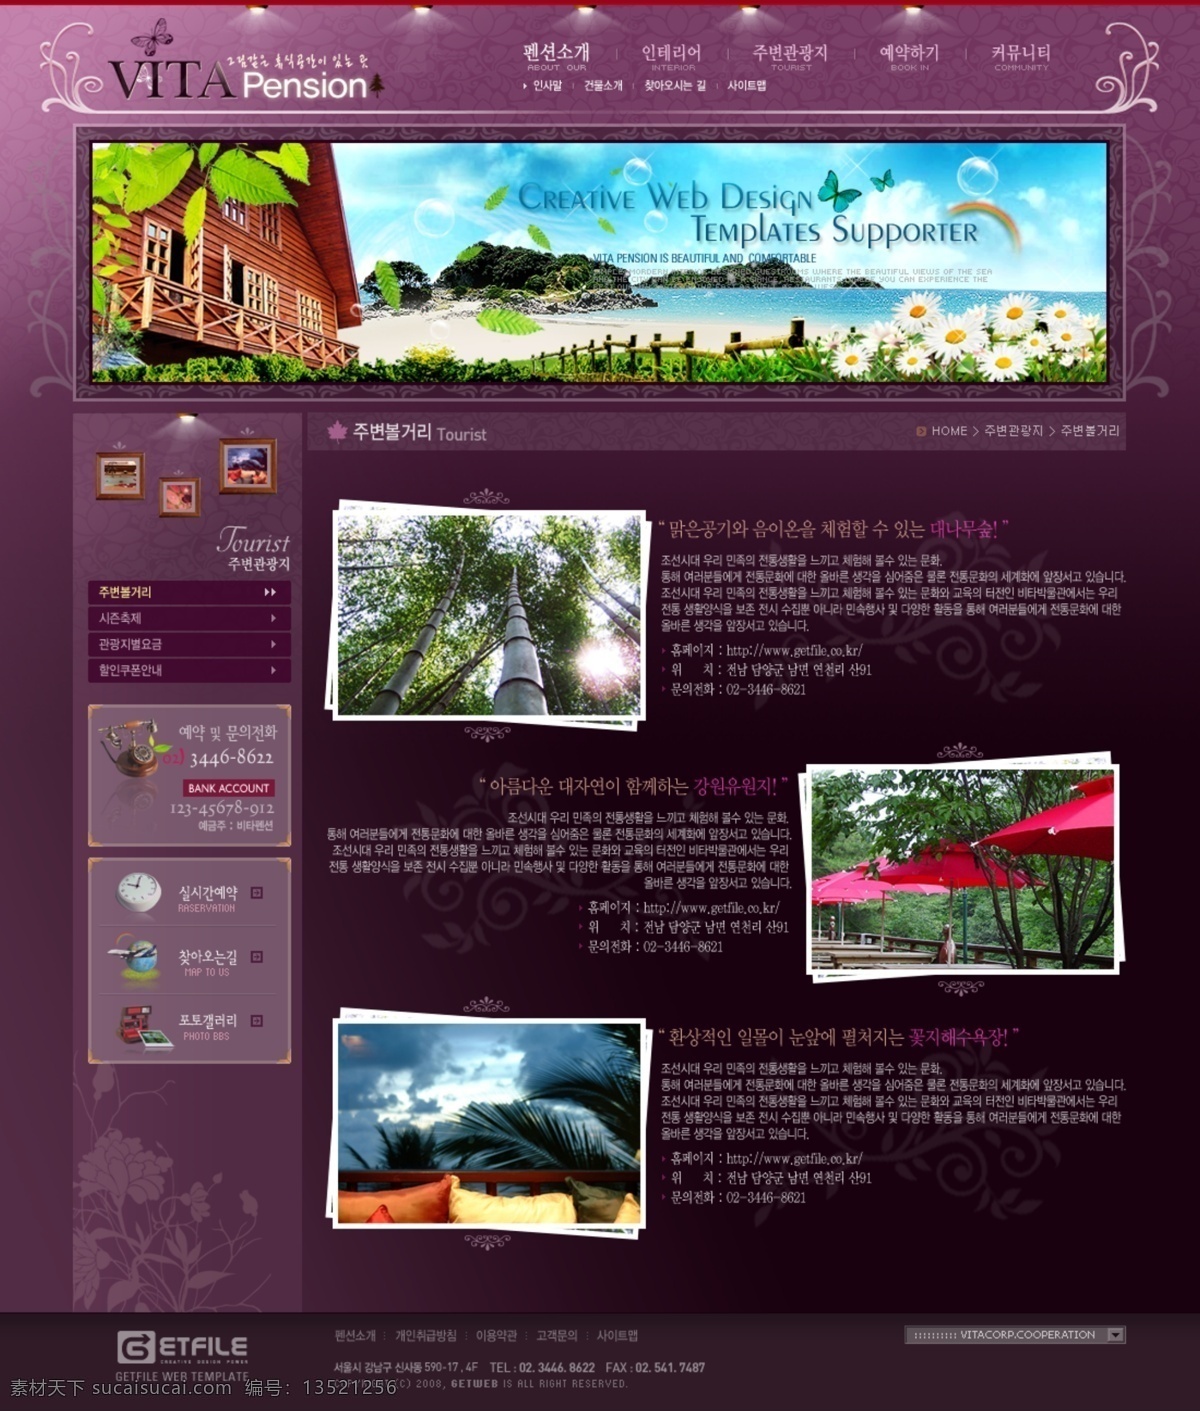 紫色 环境 网页模板 按钮 风格图片 内容页 紫色背景 设计环境 最终页 结果页 网页素材